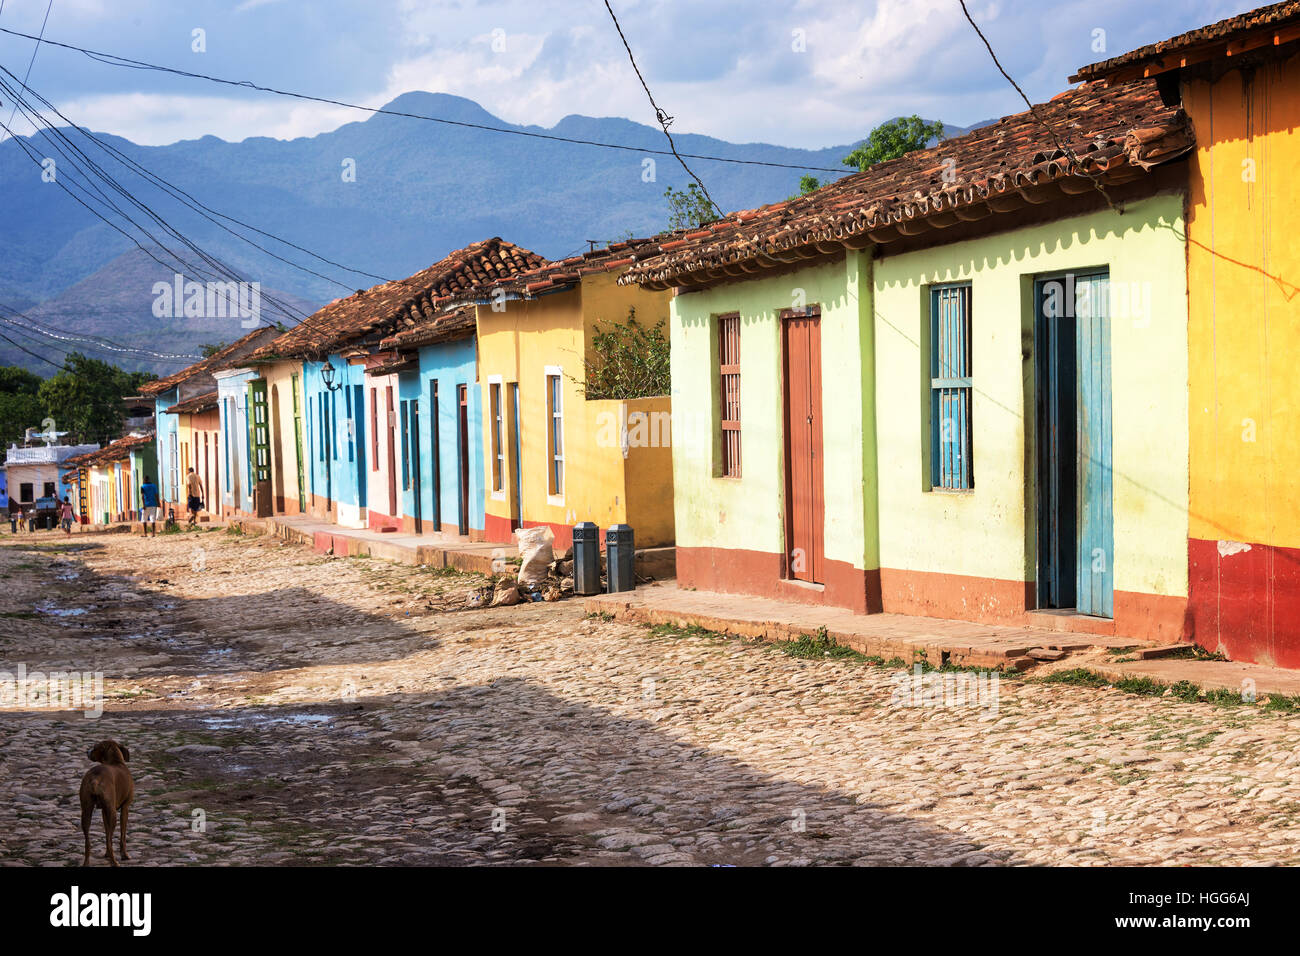 Maisons colorées dans une rue pavée de Trinidad, Cuba Banque D'Images